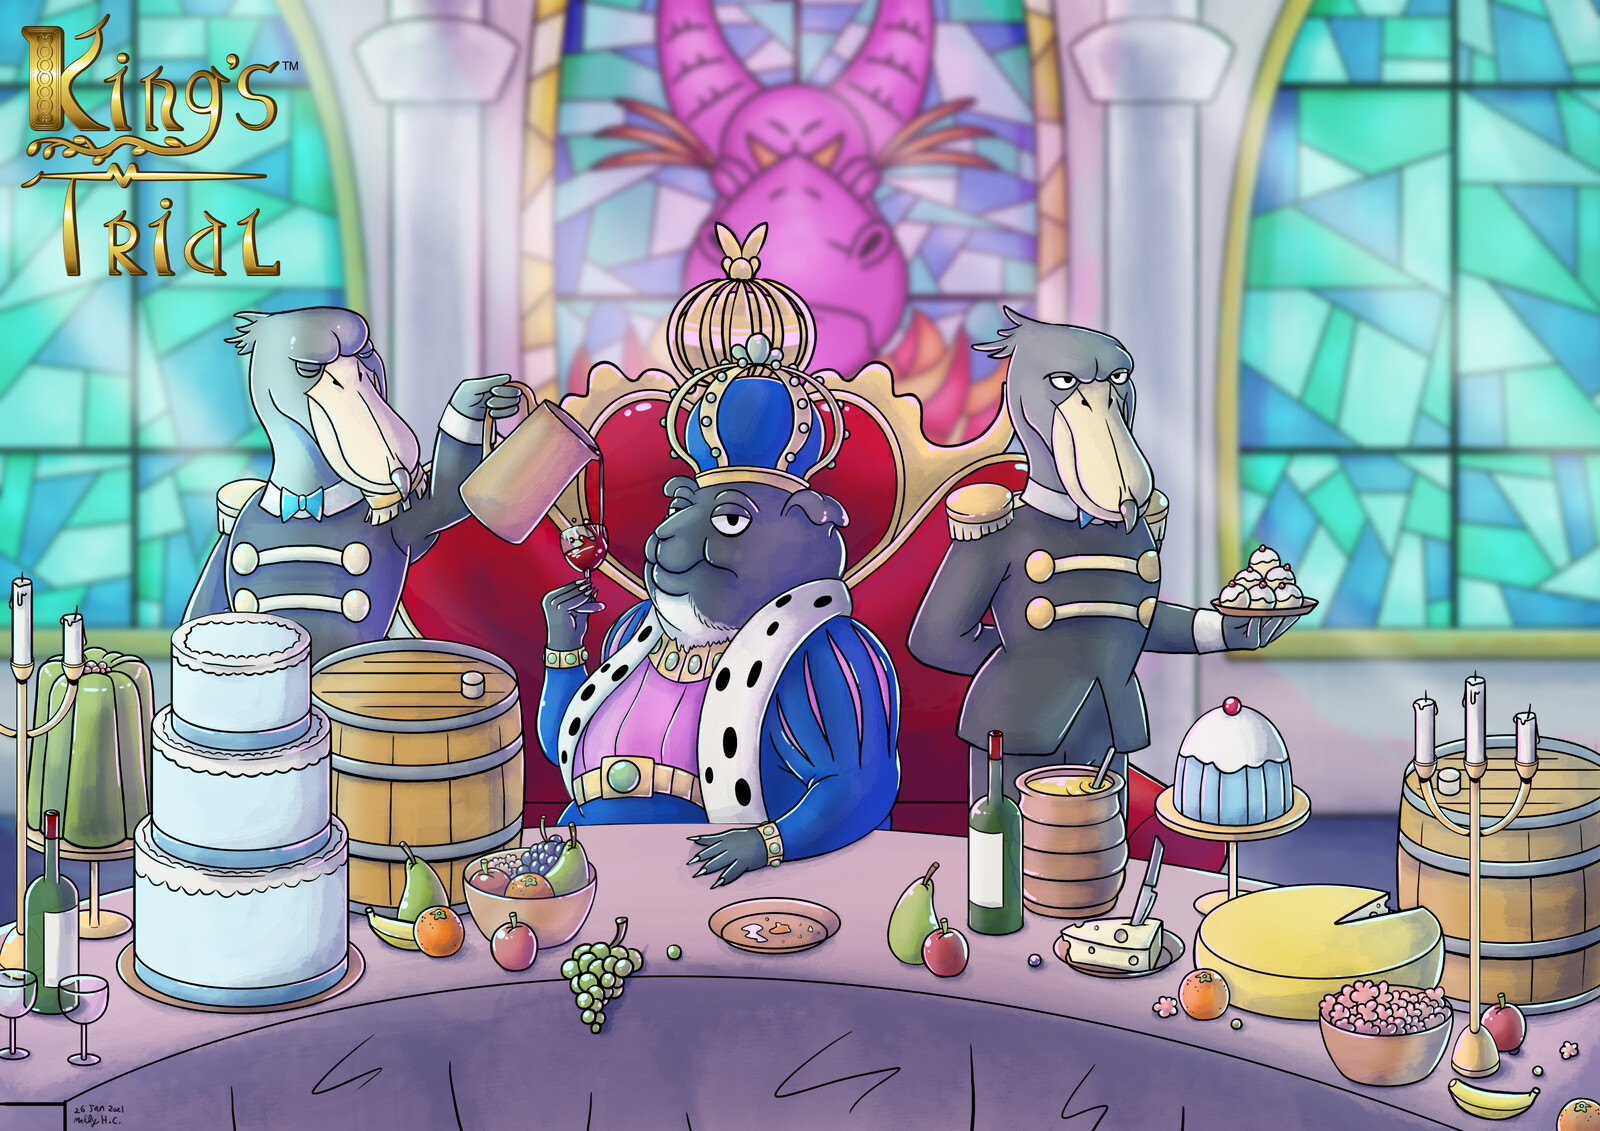 King's Trial: Kickstarter Illustration (2020)